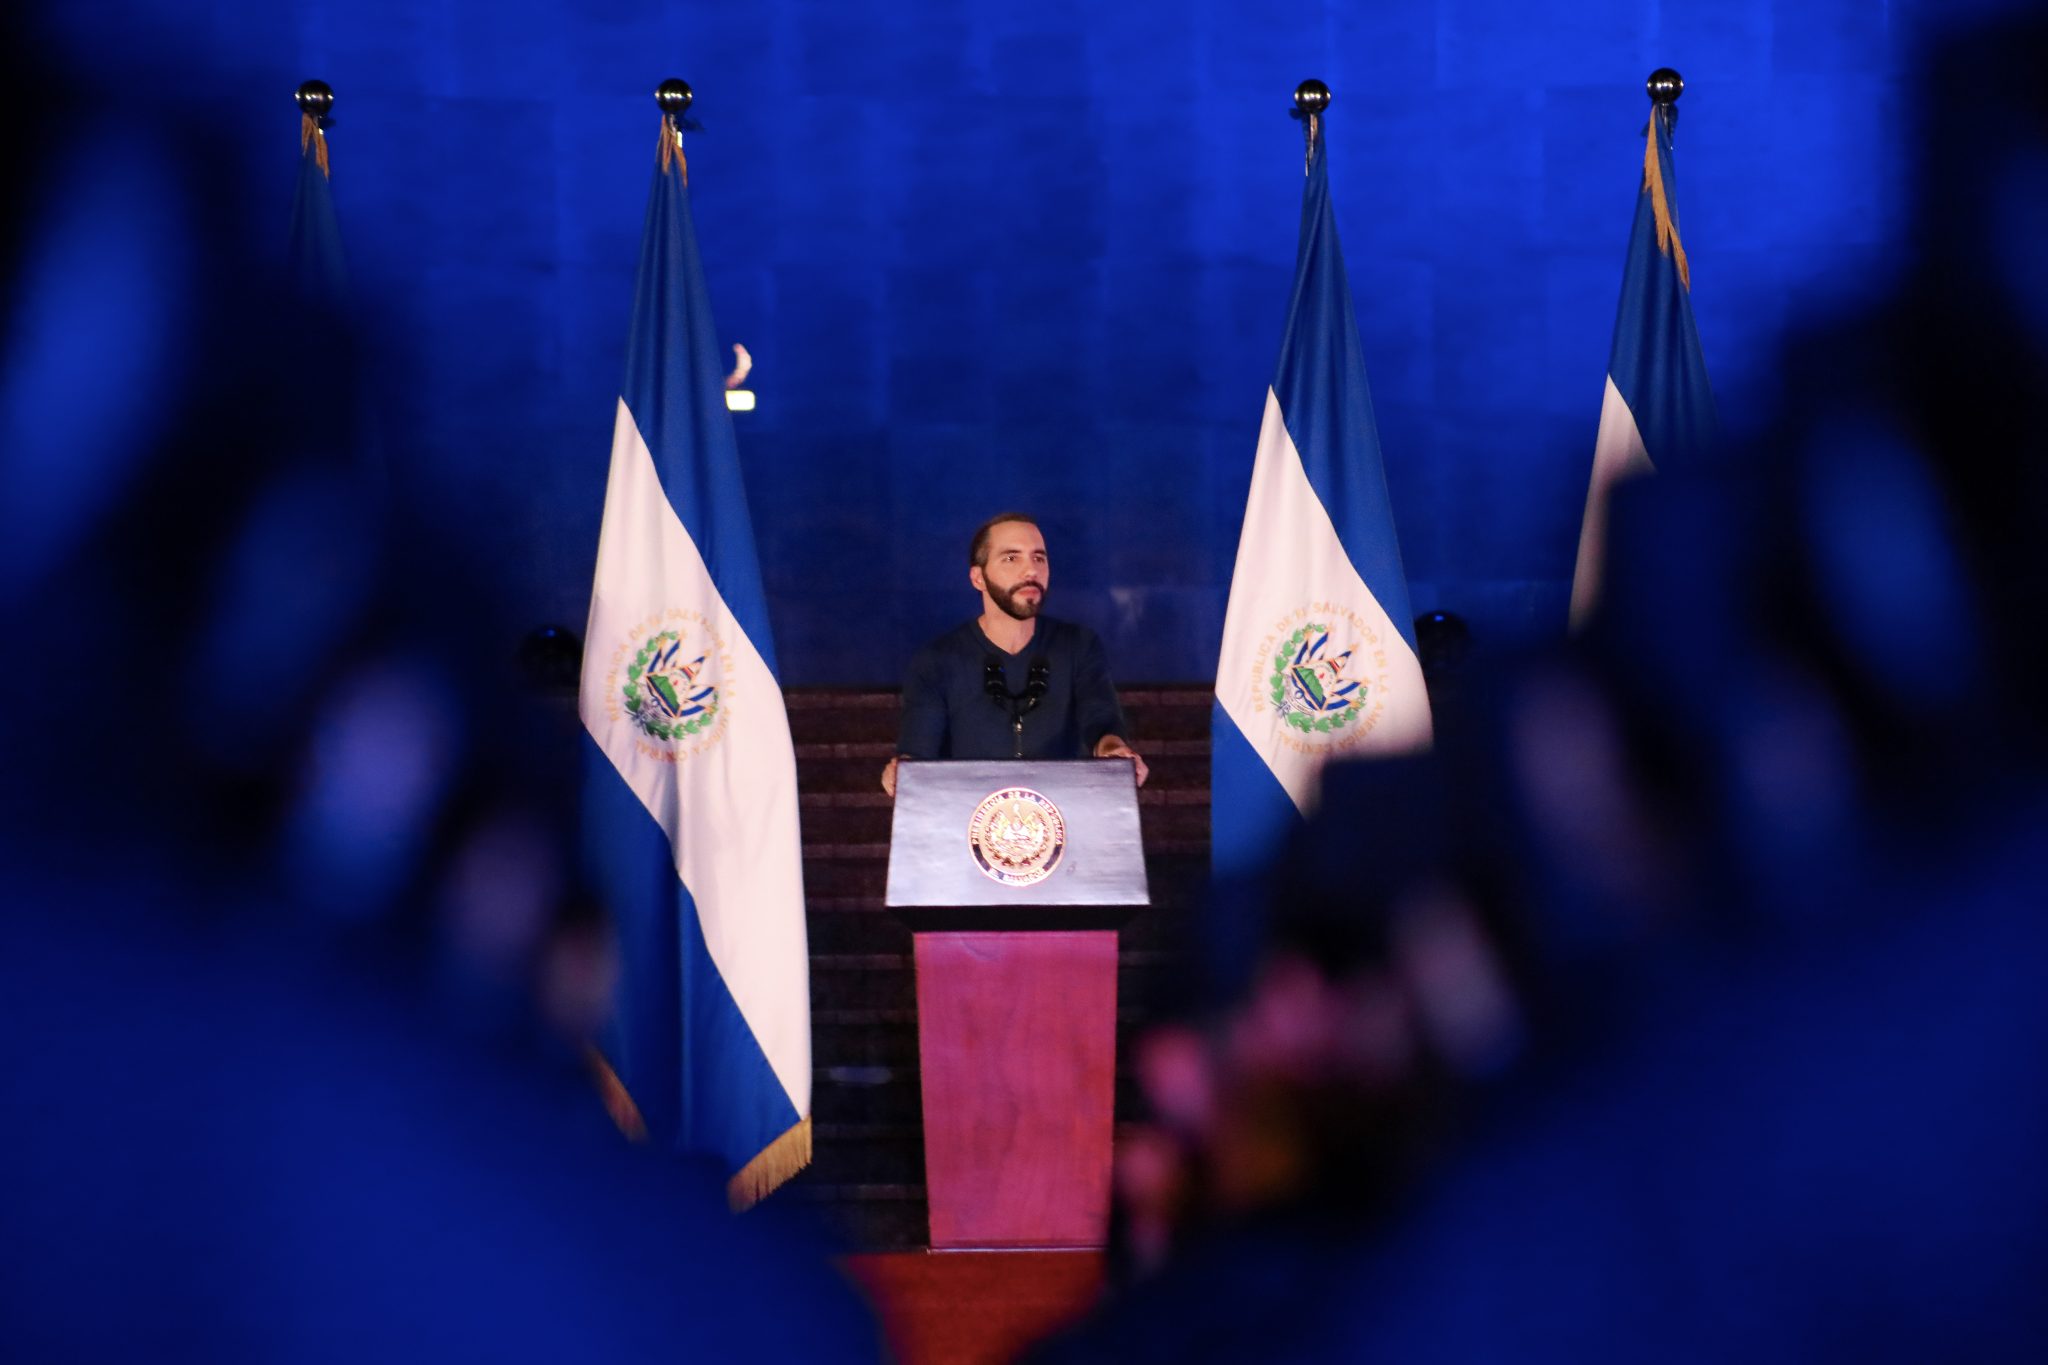 Presidente de El Salvador Nayib Bukele: “Todos a disfrutar las fiestas de Navidad y Año Nuevo en total seguridad”